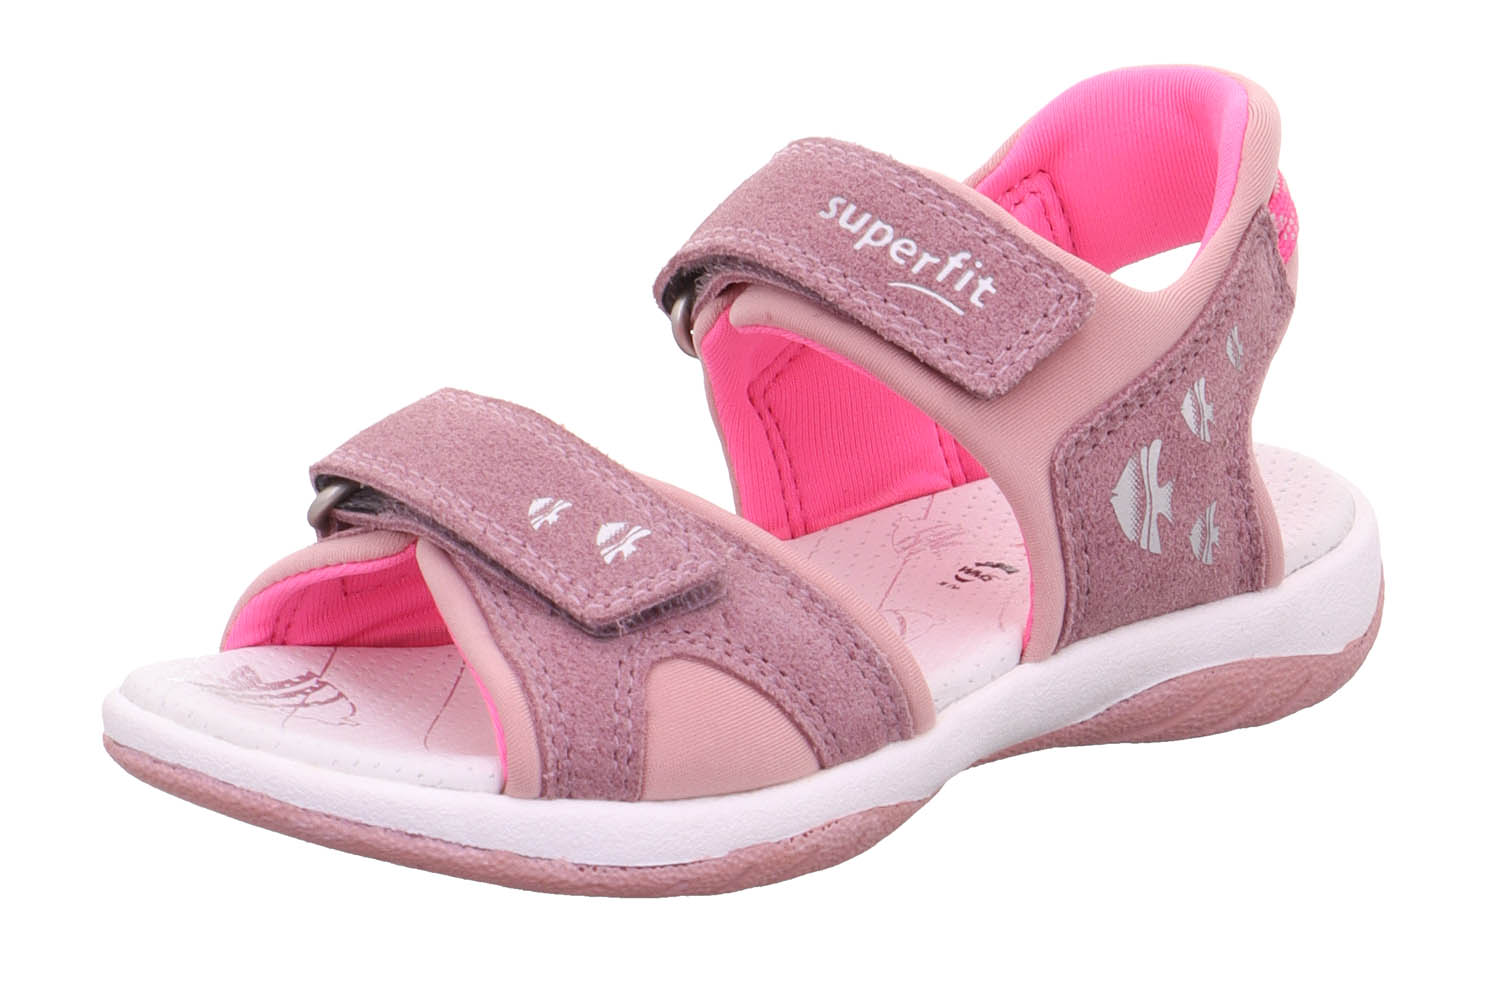 Босоножки Superfit для девочек, размер RU 28, фиолетовый и розовый, 1-006127-8500